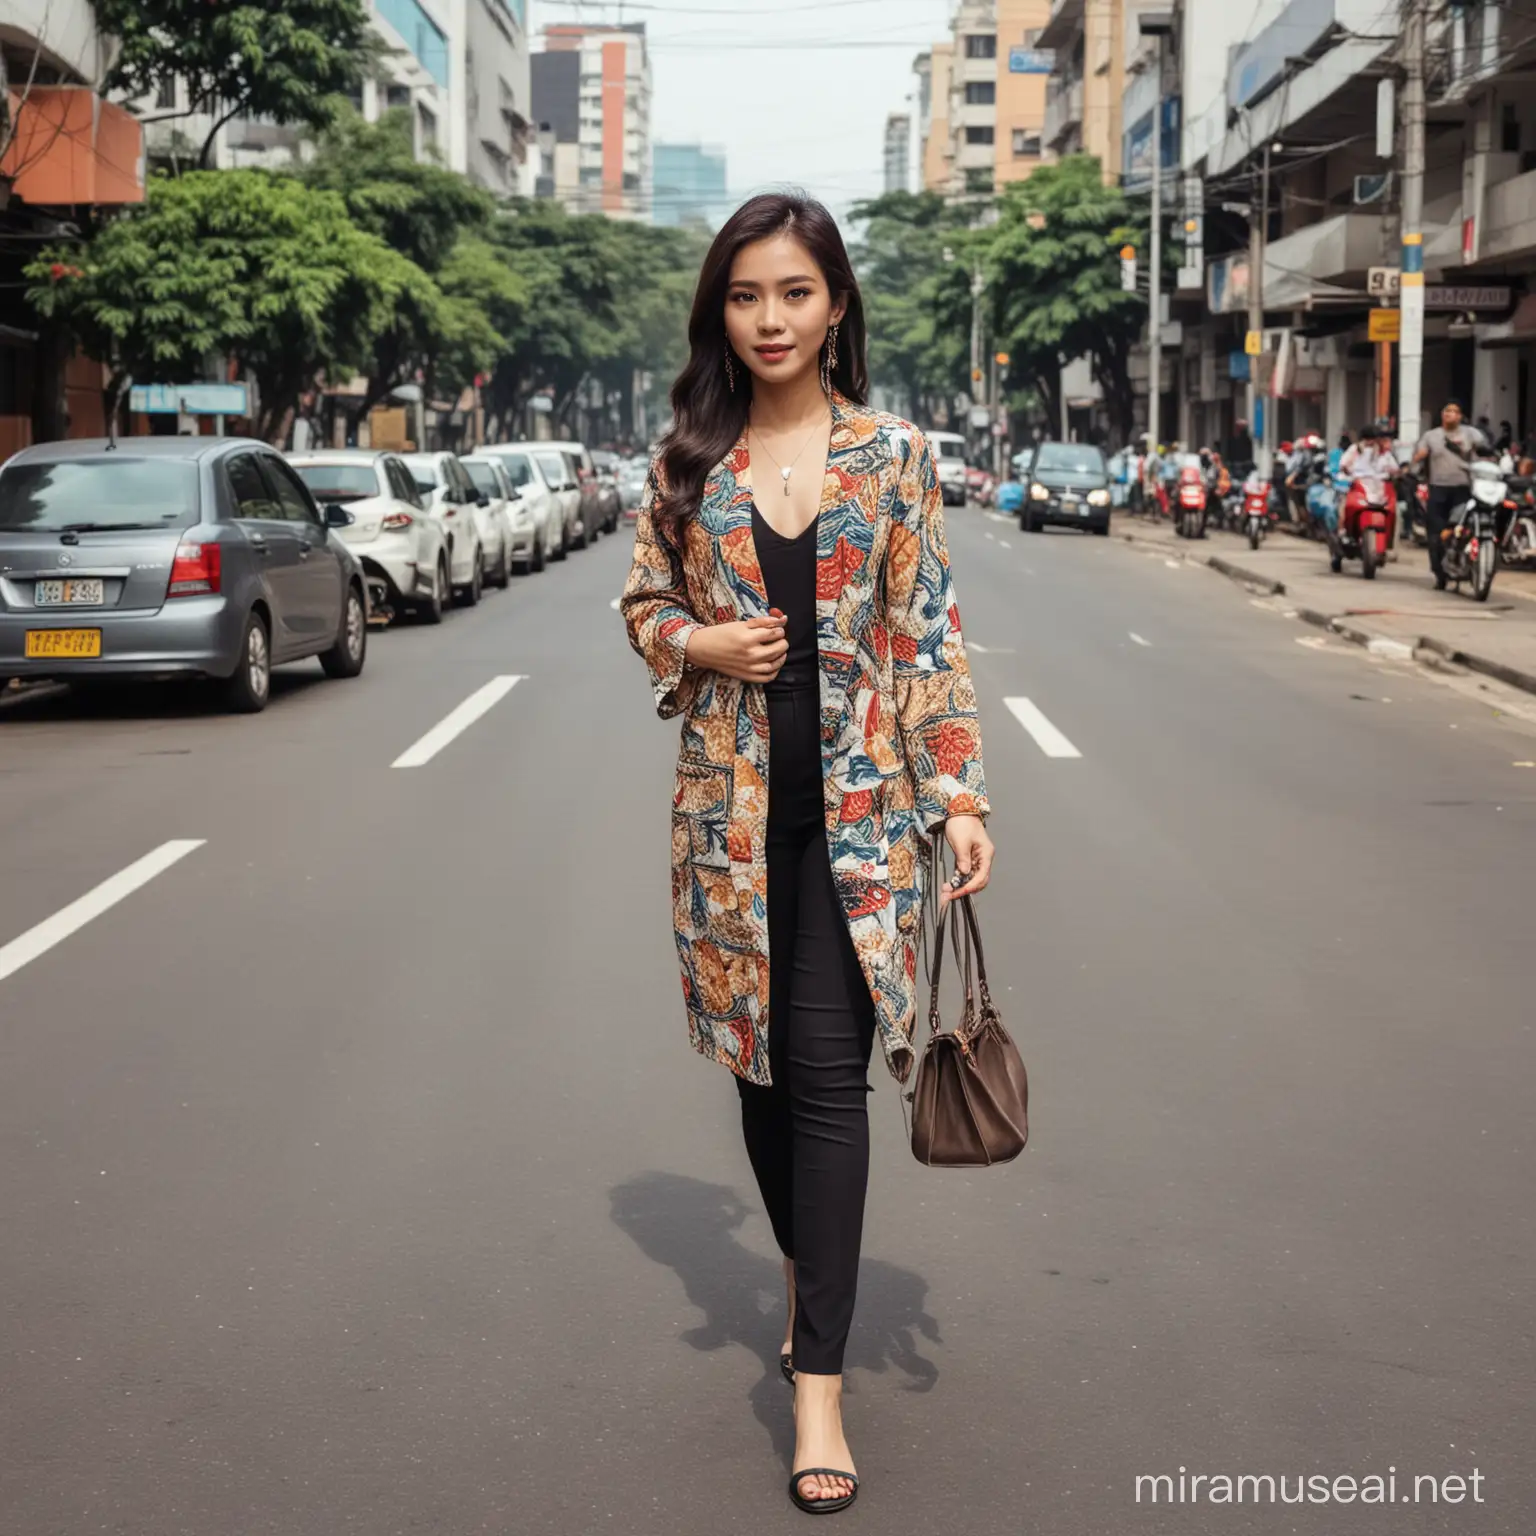 seorang wanita Indonesia pakaian

#OOTD di jalan kota jakarta Indonesia